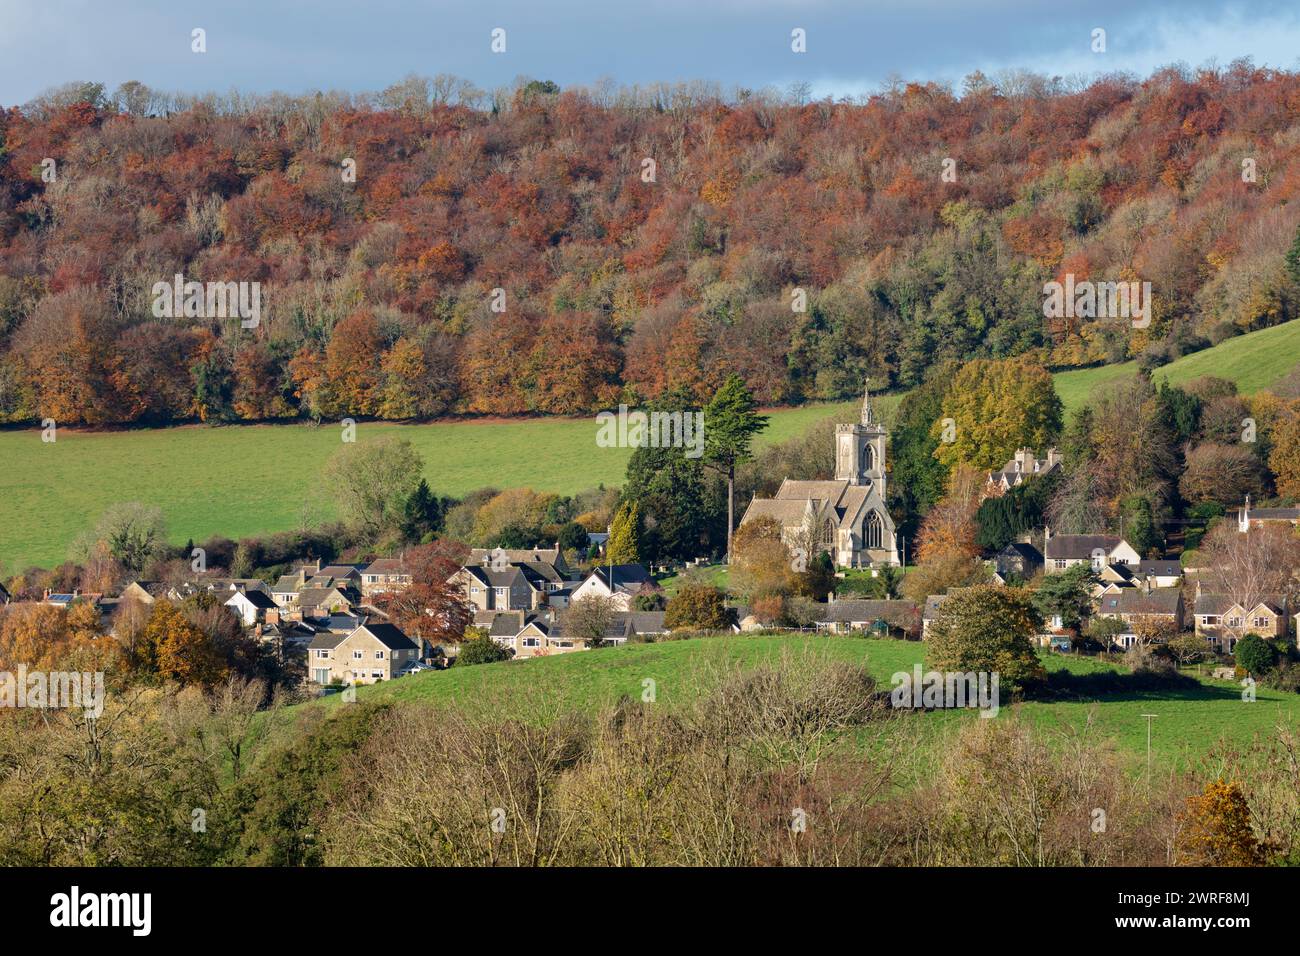 Dorf Uley und Kirche unterhalb des Uley Bury Hügels im Herbst, Uley, nahe Dursley, Cotswolds, Gloucestershire, England, Vereinigtes Königreich, Europa Stockfoto